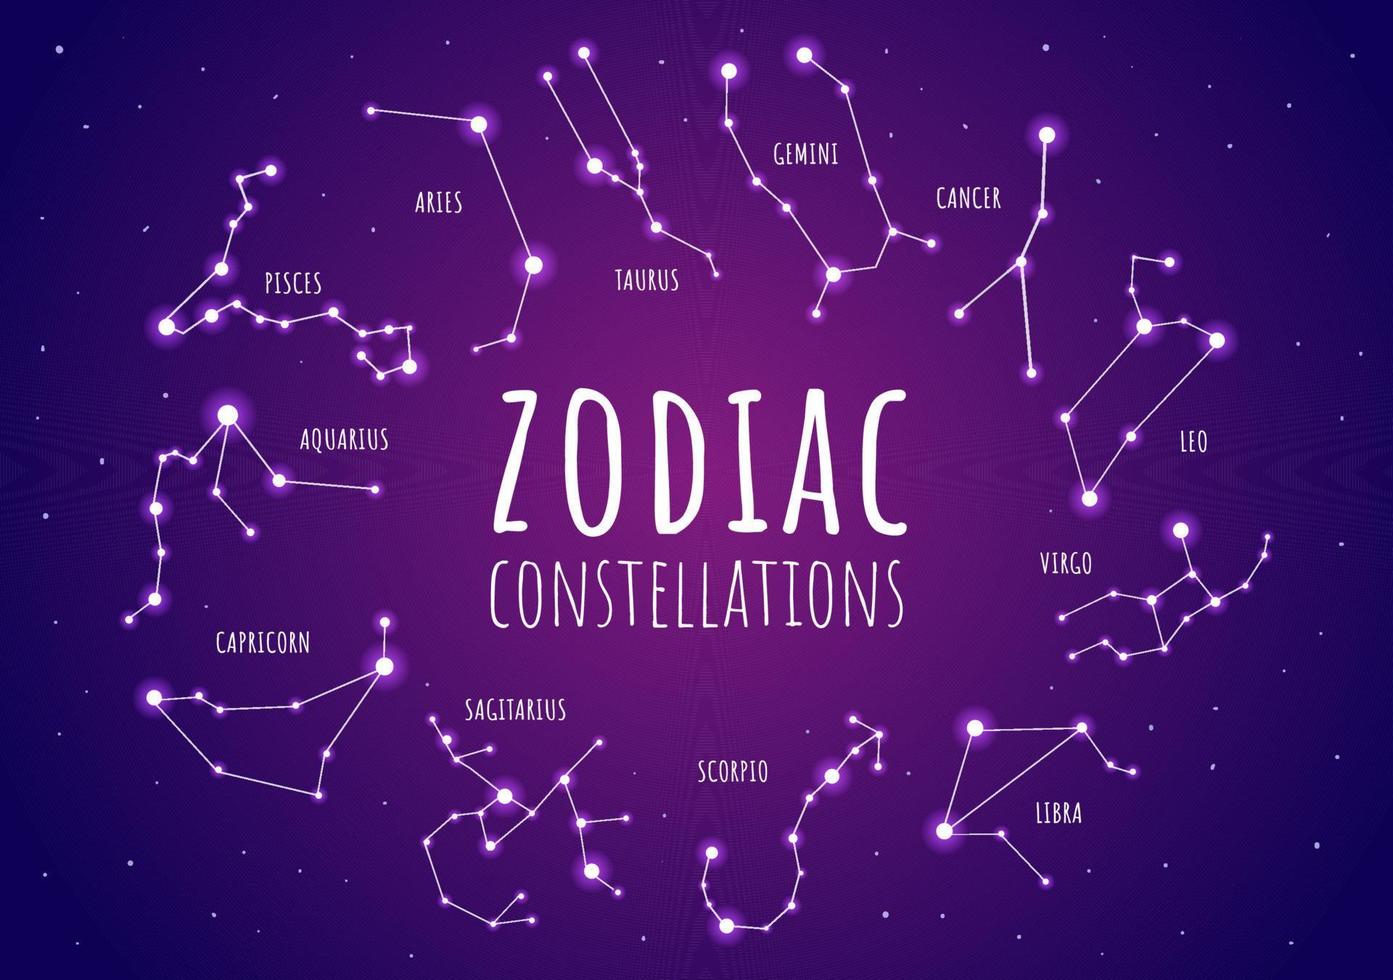 segno zodiacale della ruota dello zodiaco con il simbolo dodici nomi di astrologia, oroscopi o costellazioni nell'illustrazione piana di vettore del personaggio dei cartoni animati